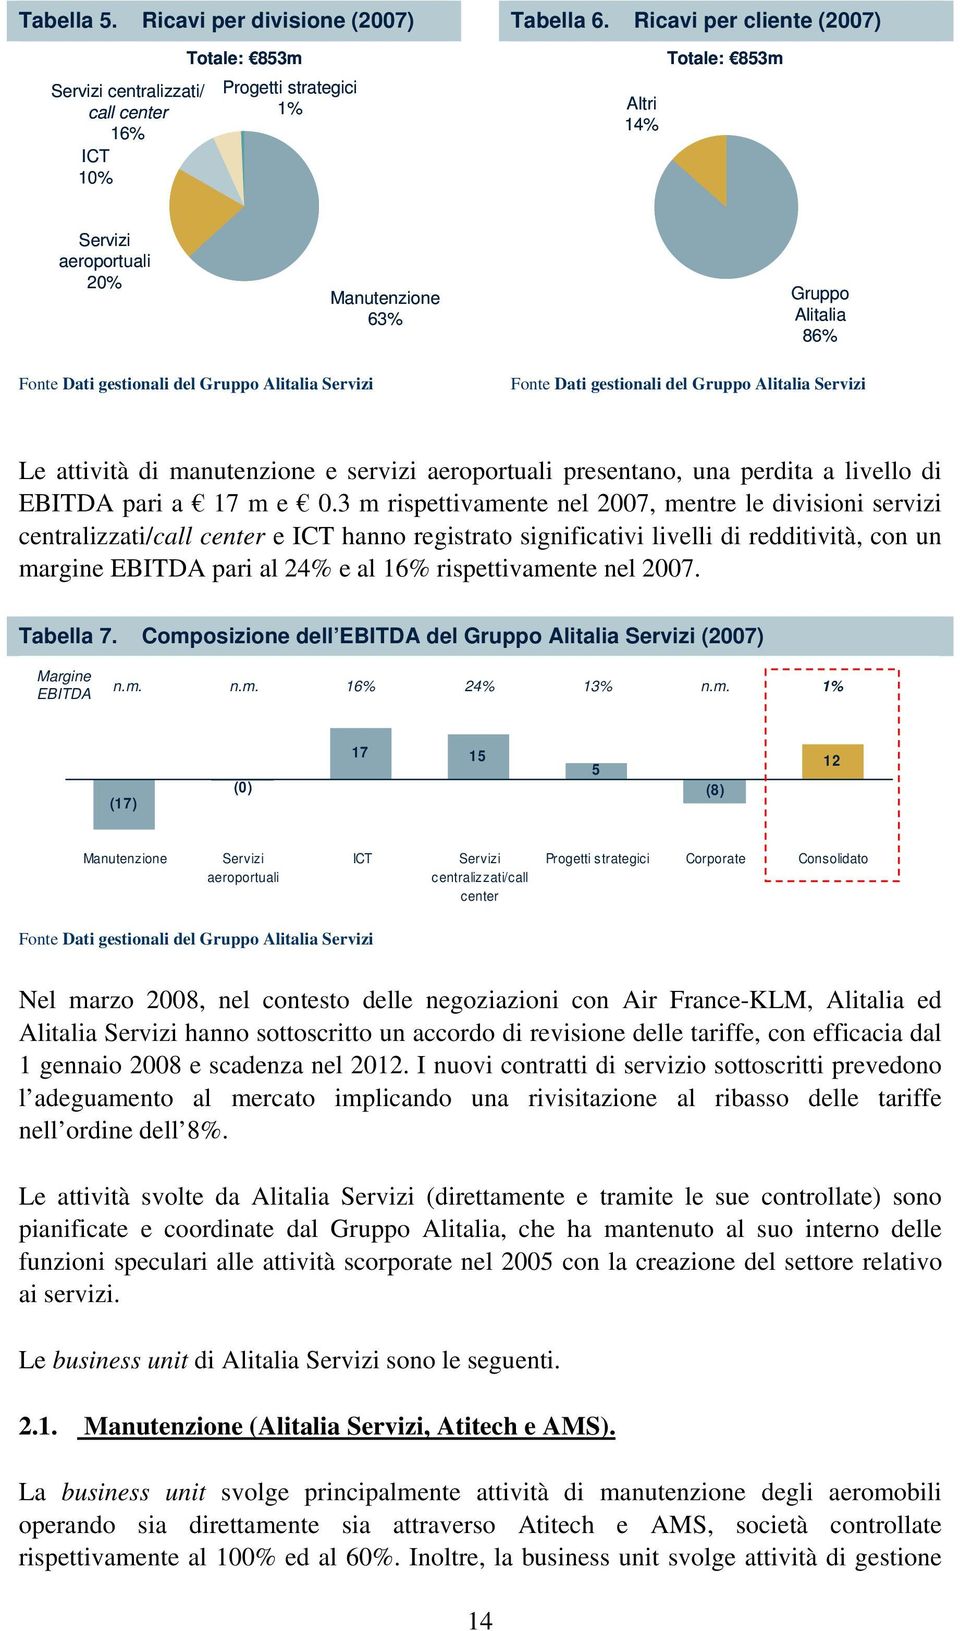 Dati gestionali del Gruppo Alitalia Servizi Fonte Dati gestionali del Gruppo Alitalia Servizi Le attività di manutenzione e servizi aeroportuali presentano, una perdita a livello di EBITDA pari a 17